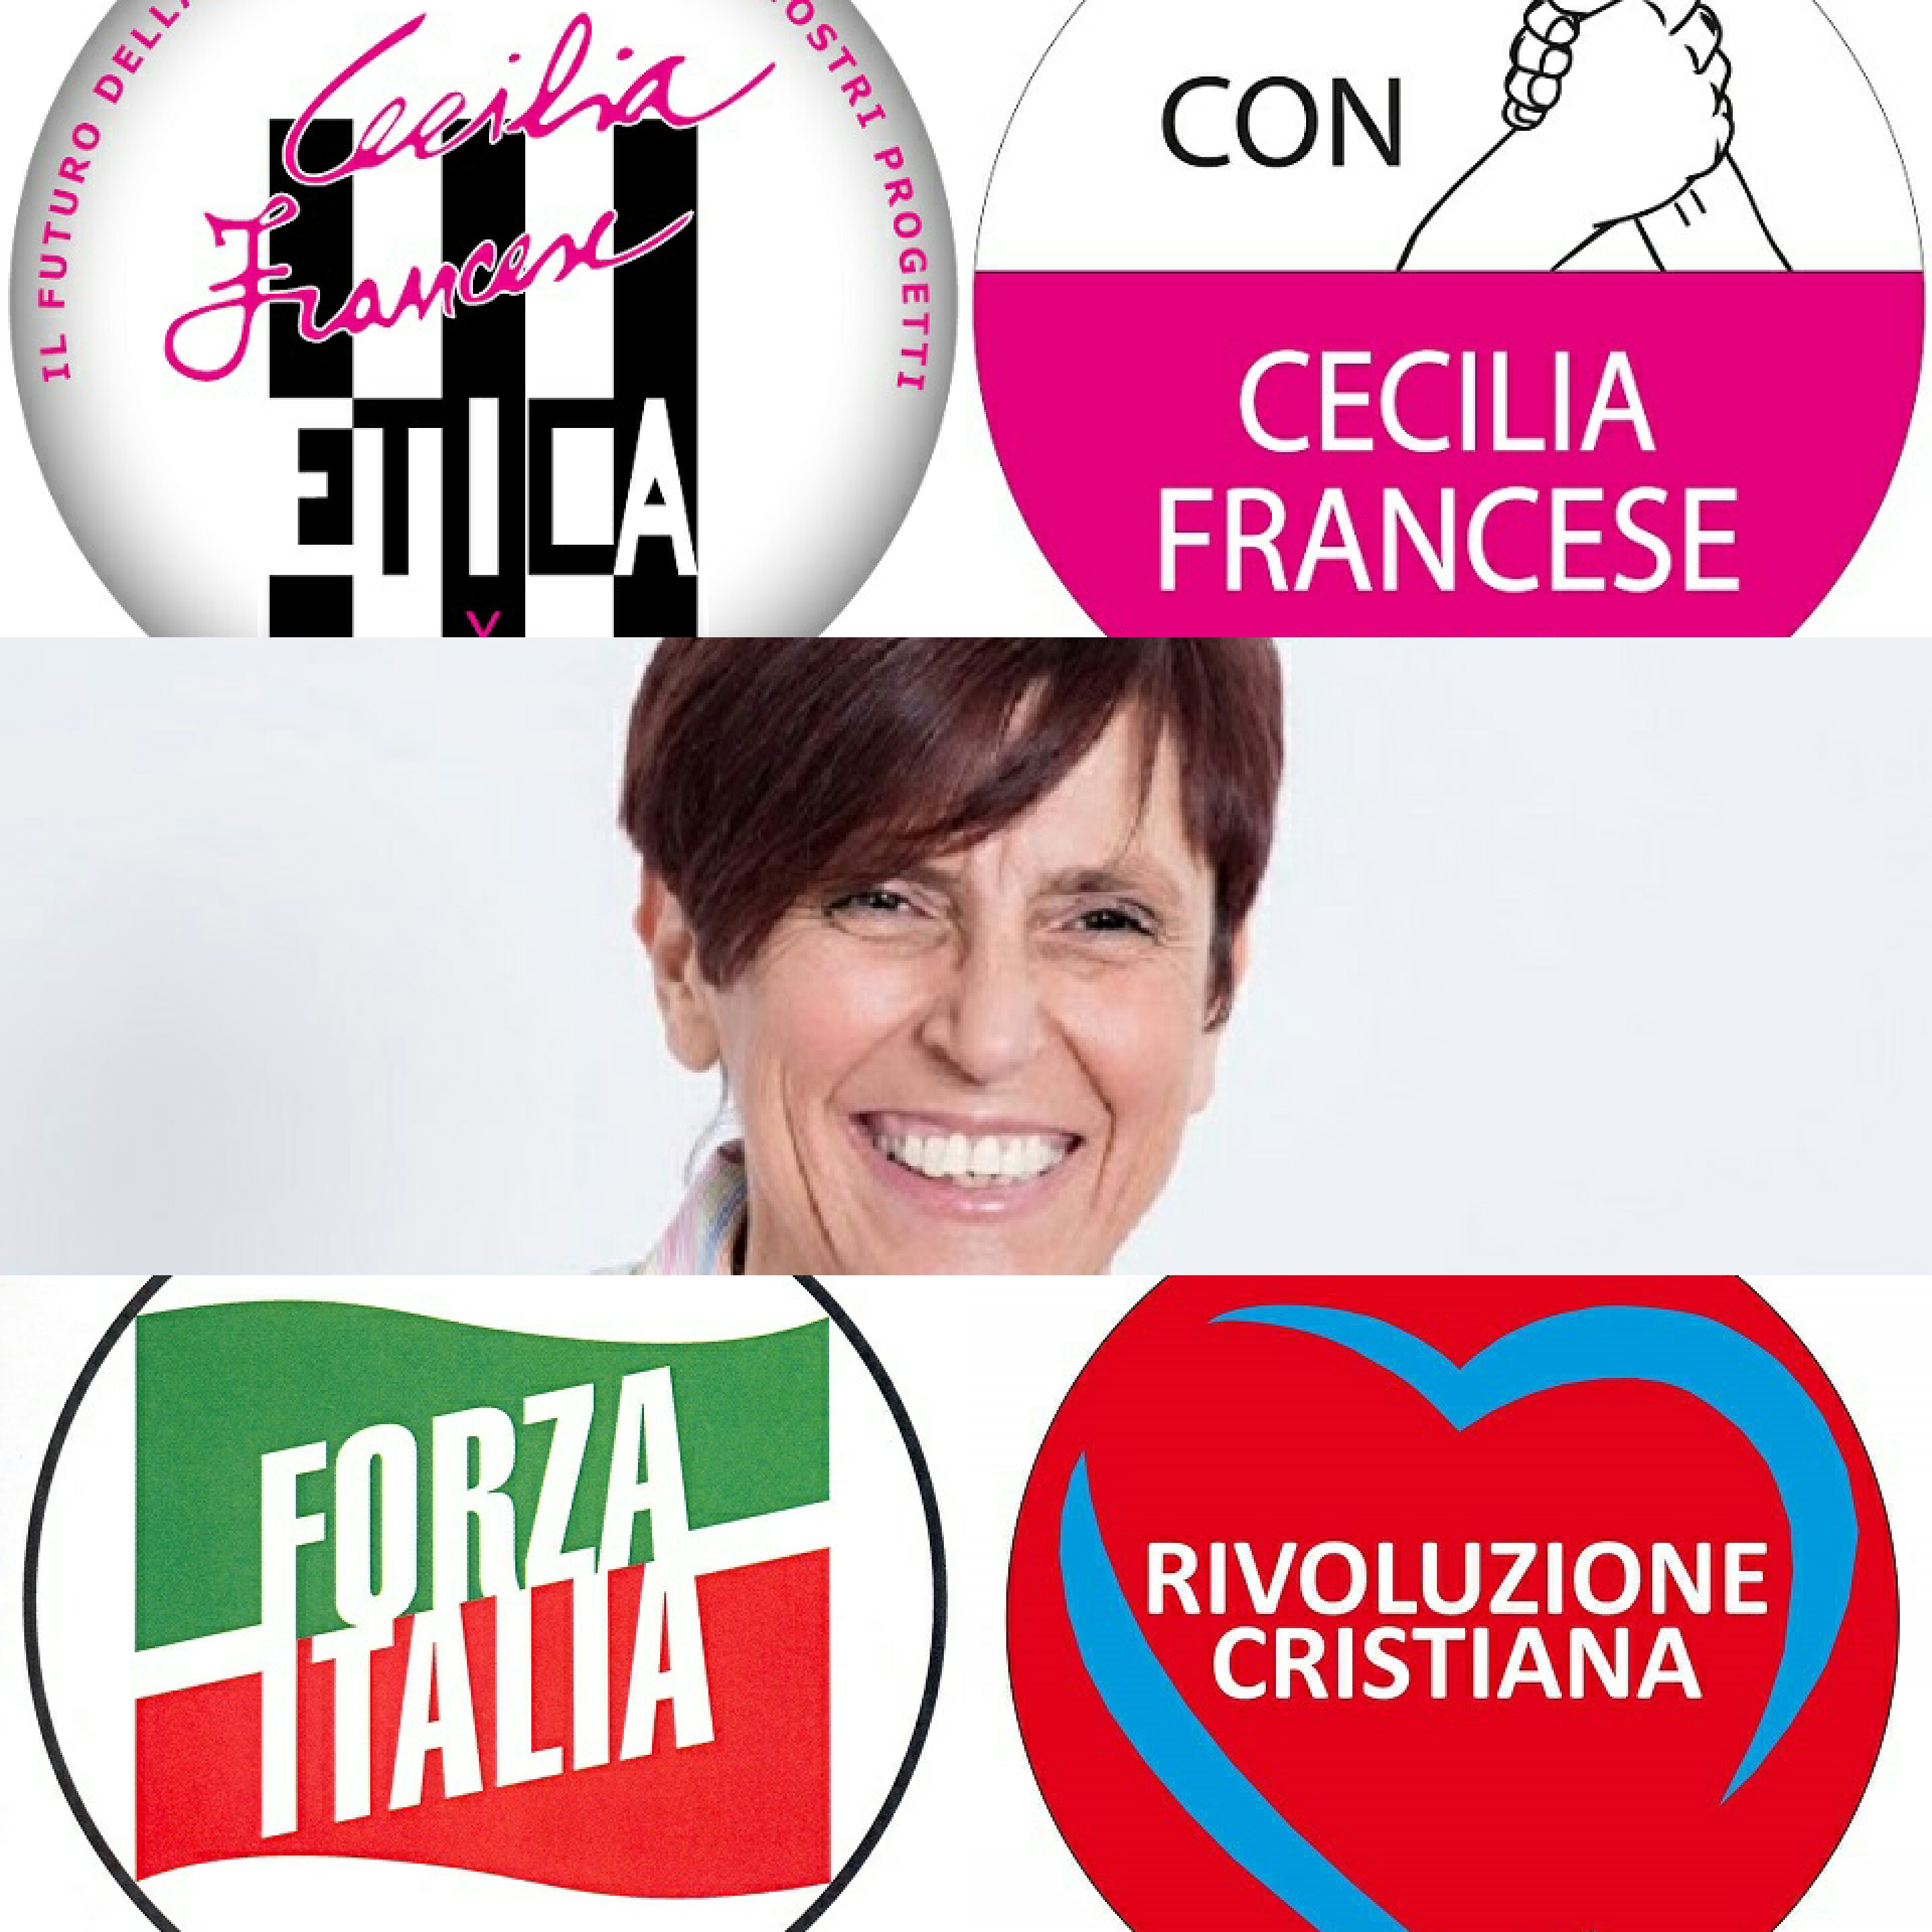 Cecilia Francese-Etica-FI-Rivoluzione Cristiana-Con Cecilia Francese sindaco